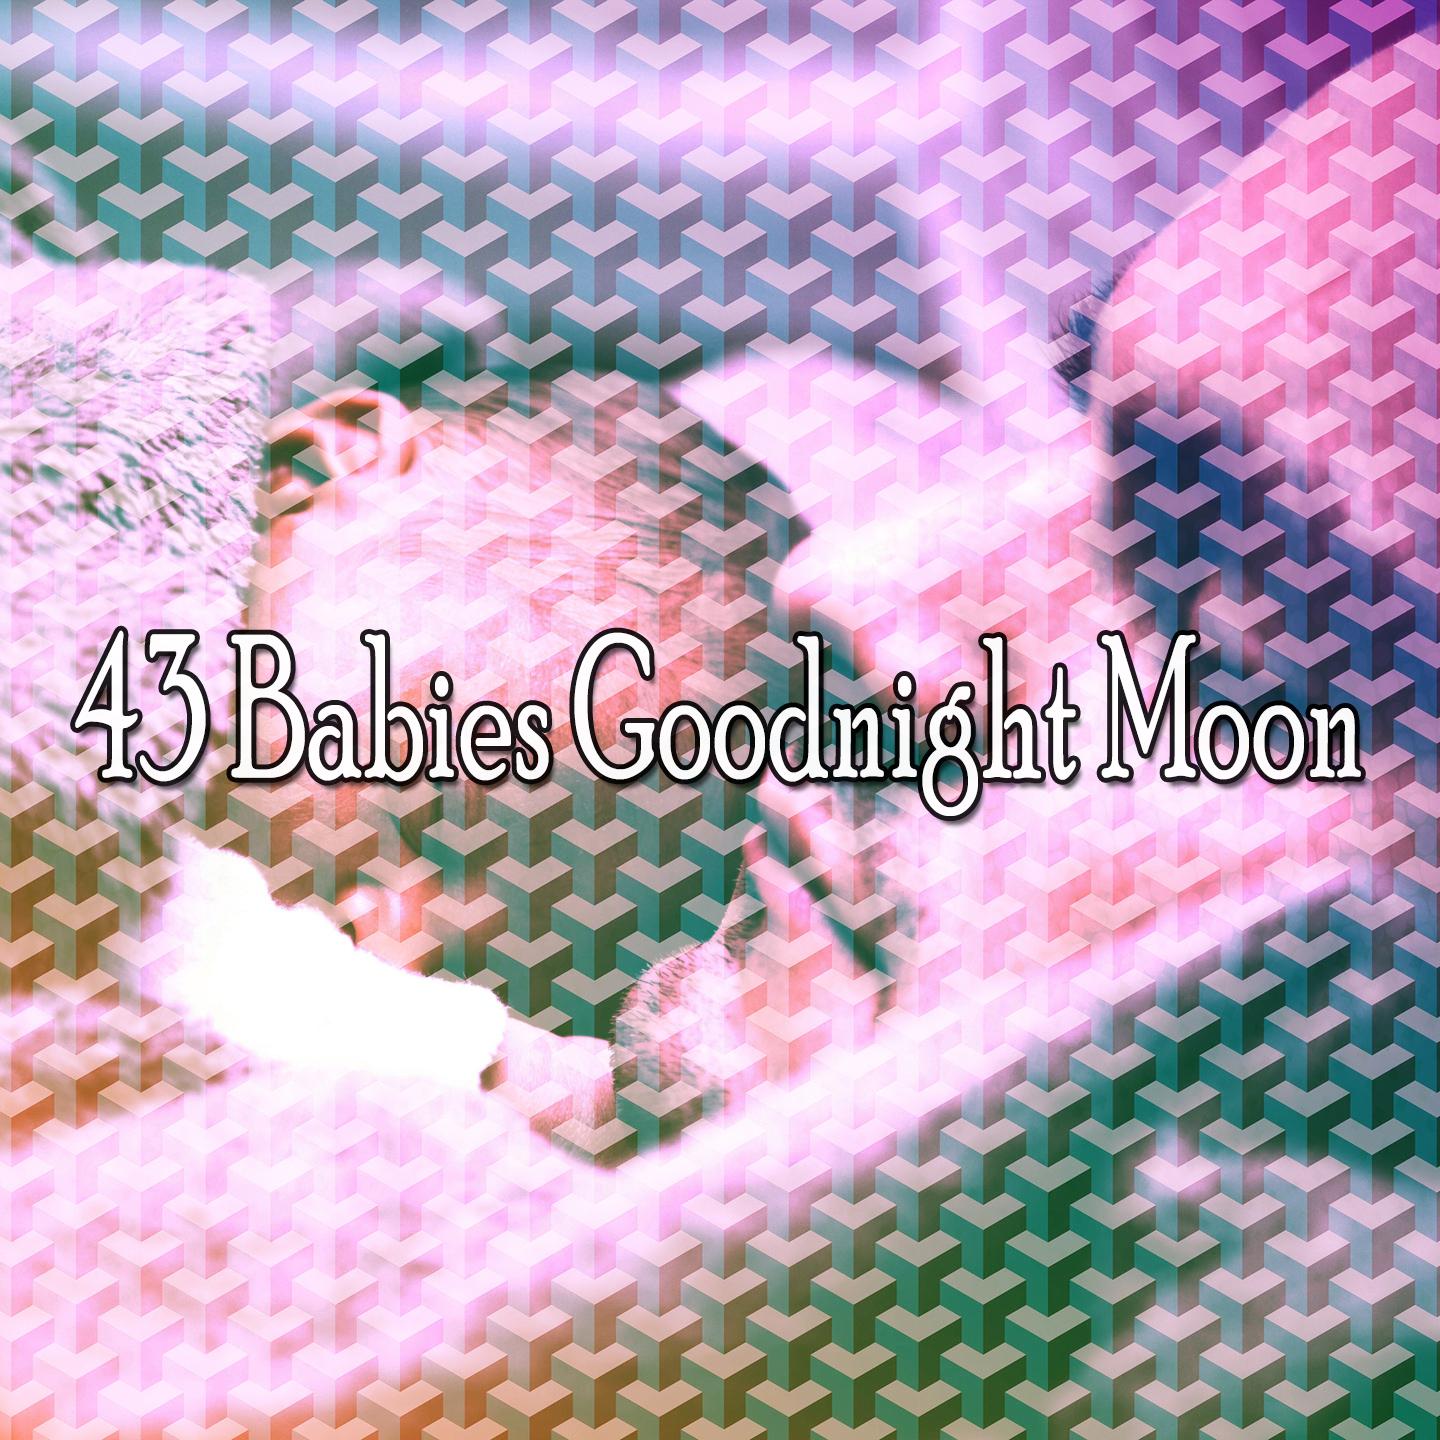 43 Babies Goodnight Moon